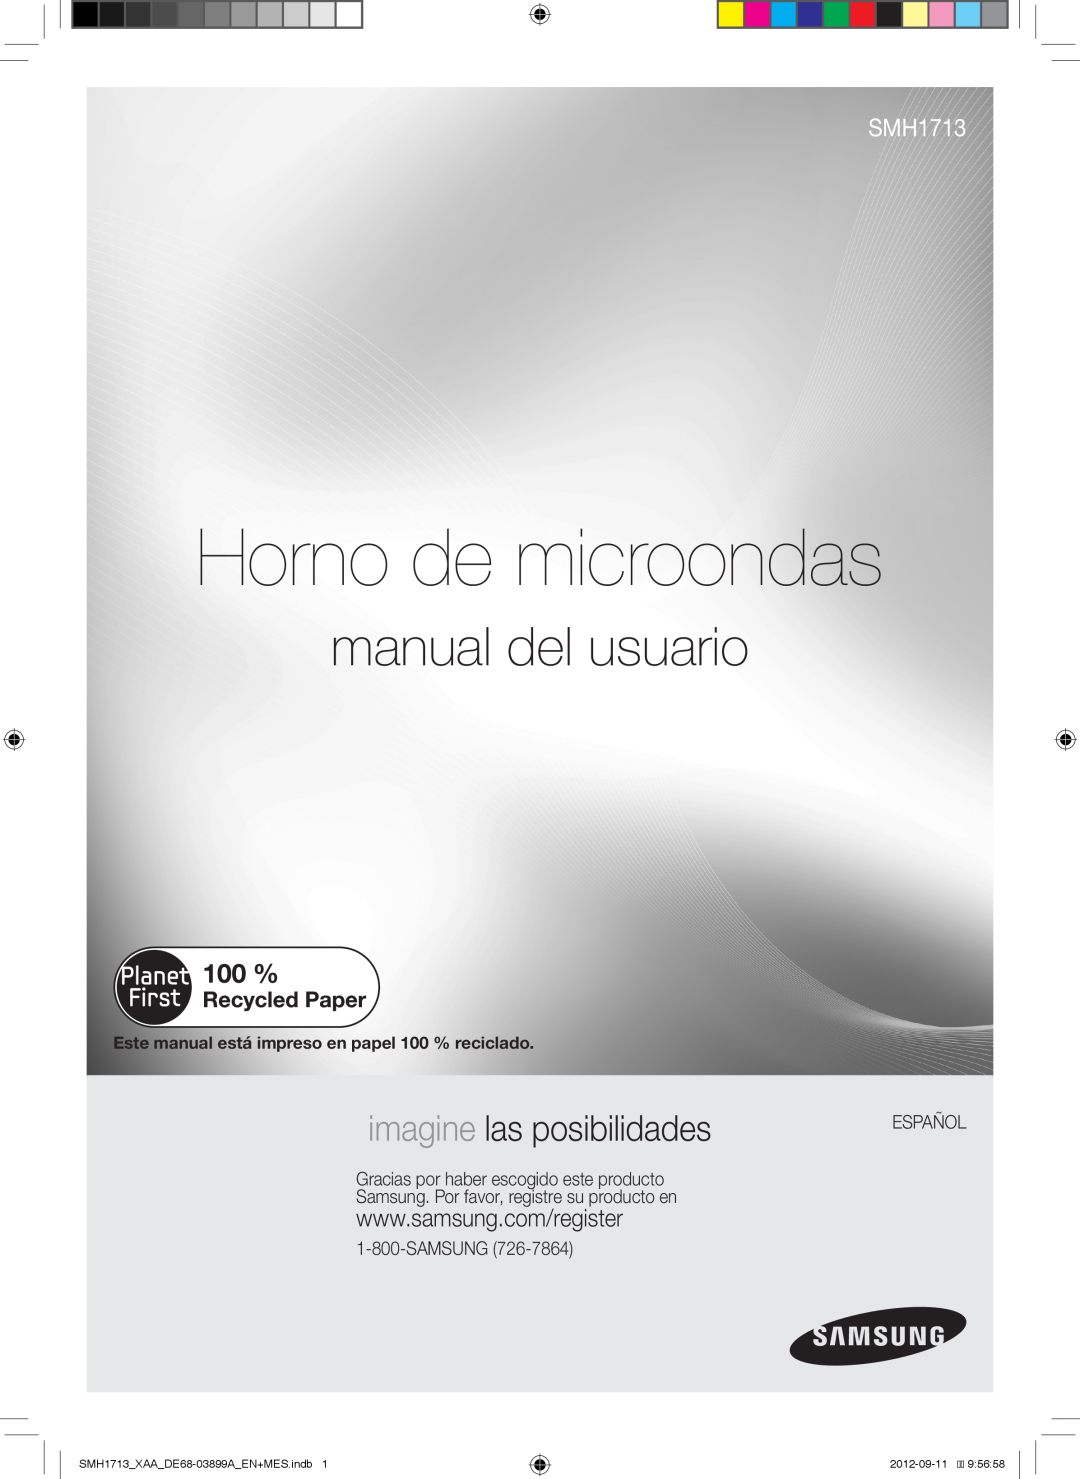 Samsung SMH1713B, SMH1713S Horno de microondas, manual del usuario, imagine las posibilidades, Español, 2012-09-119 